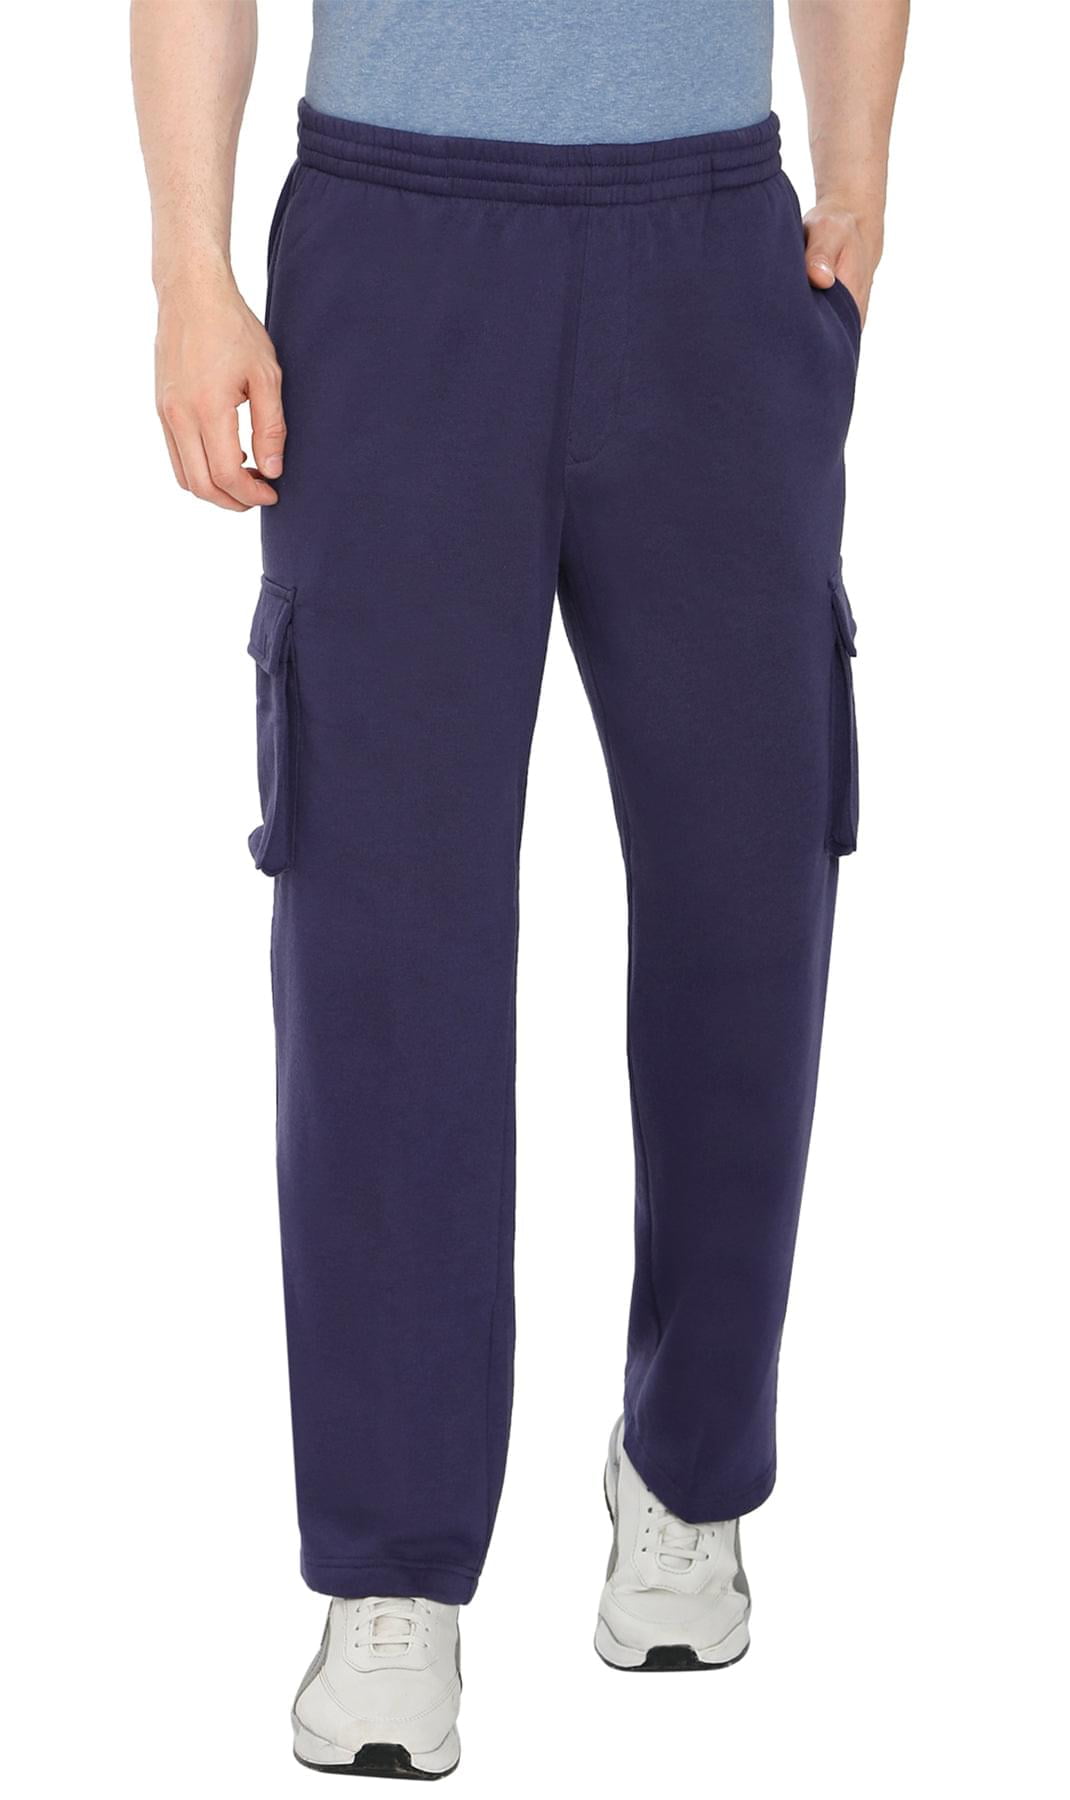 Turtle Bay New York Men's Fleece Cargo Pants - Comfy Sweatpants with ...